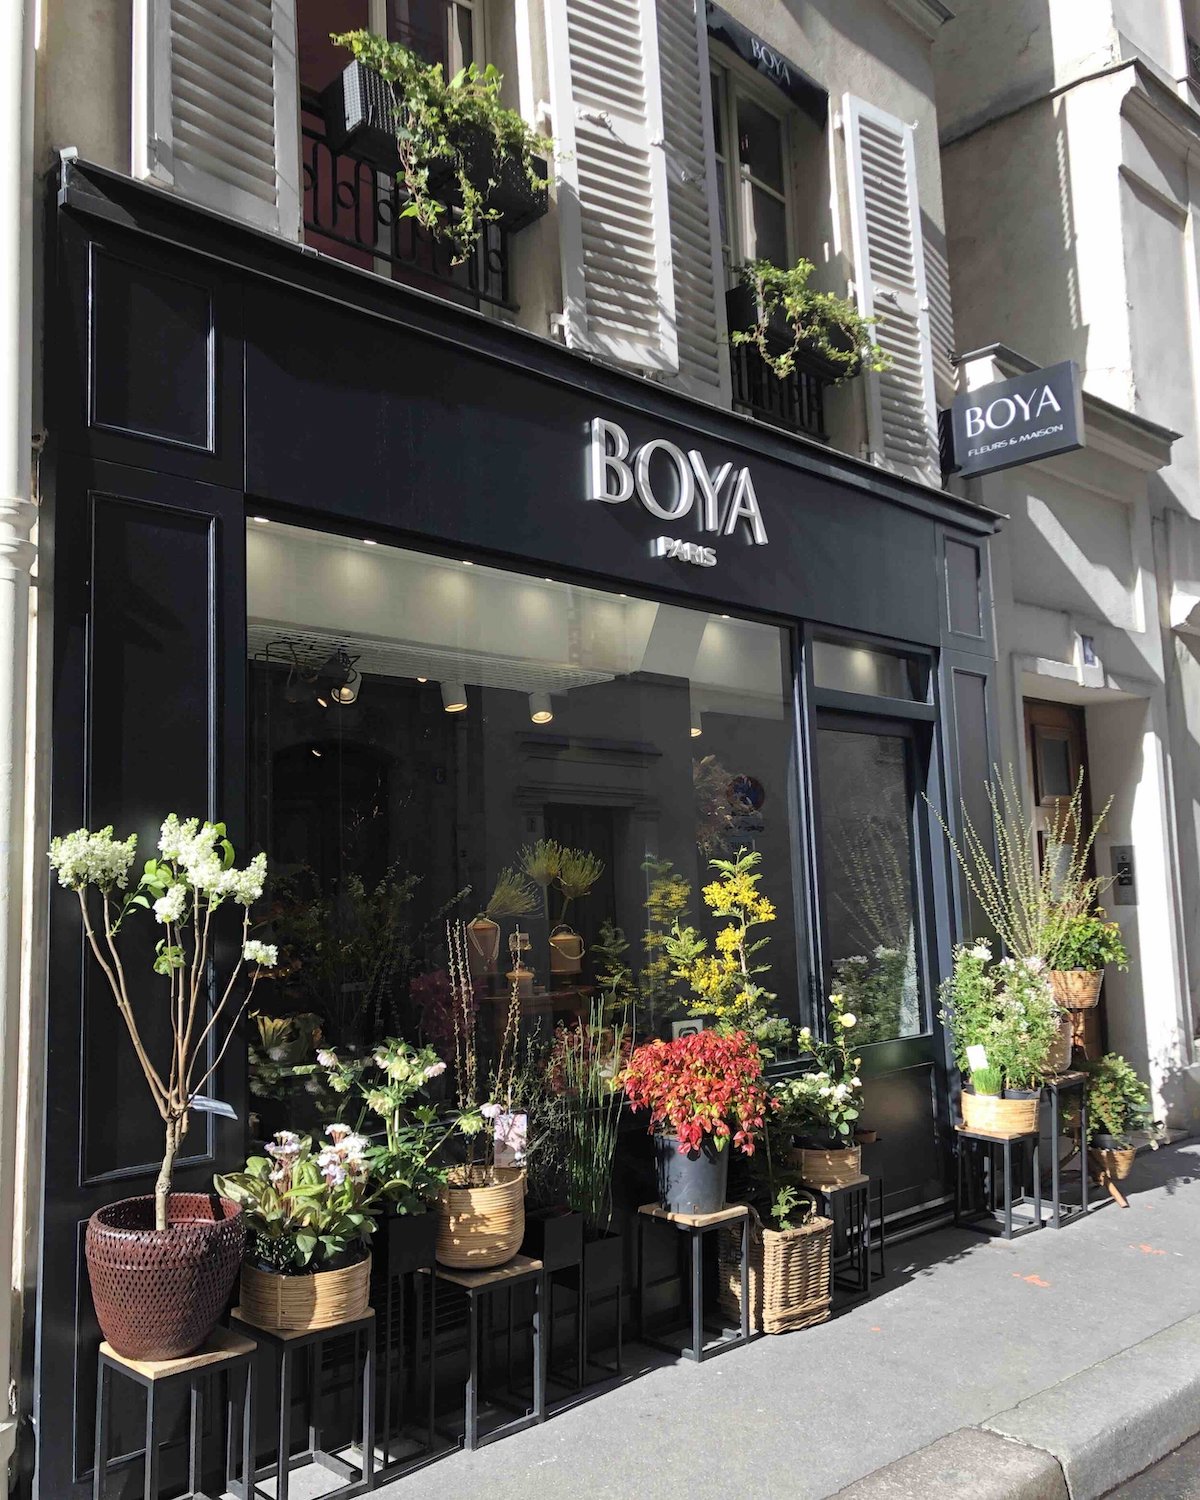 BOYA Fleurs & Maison flower shops in Paris - on Thursd